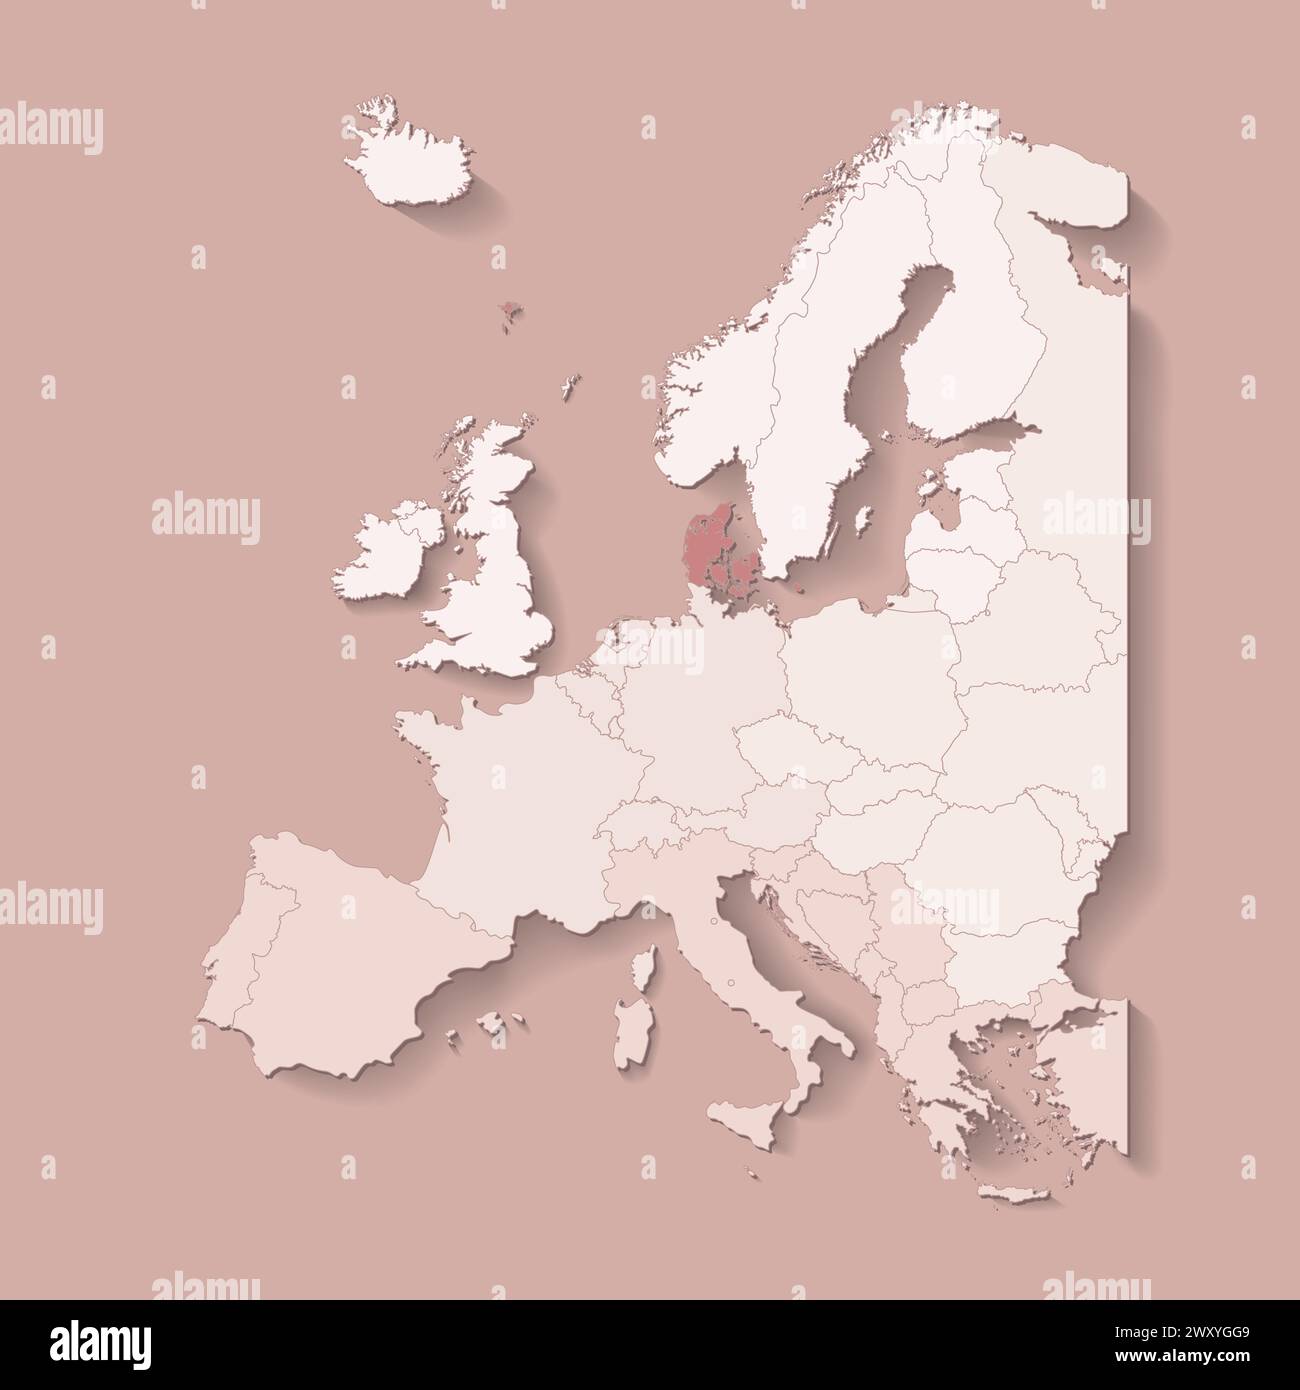 Illustrazione vettoriale con terra europea con confini di stati e paese contrassegnato Danimarca. Mappa politica di colore marrone con occidentale, sud e così via Illustrazione Vettoriale